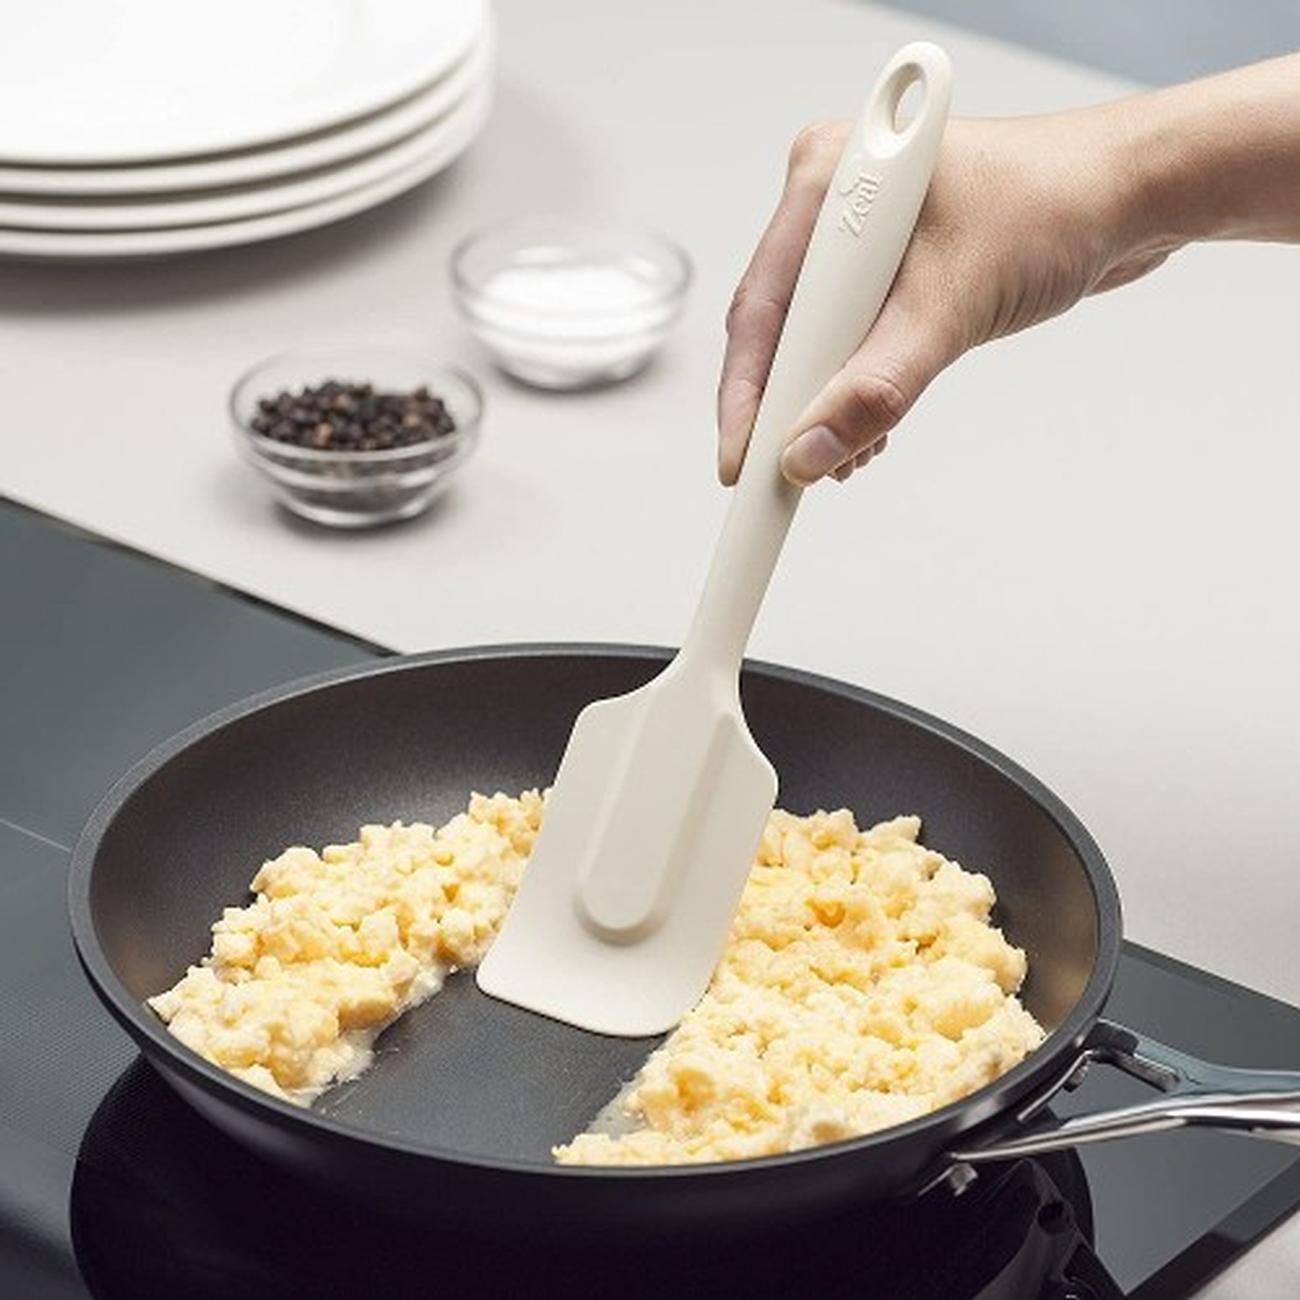 zeal-silicone-non-stick-spatula-large-cream - Zeal Silicone Spatula Large Cream